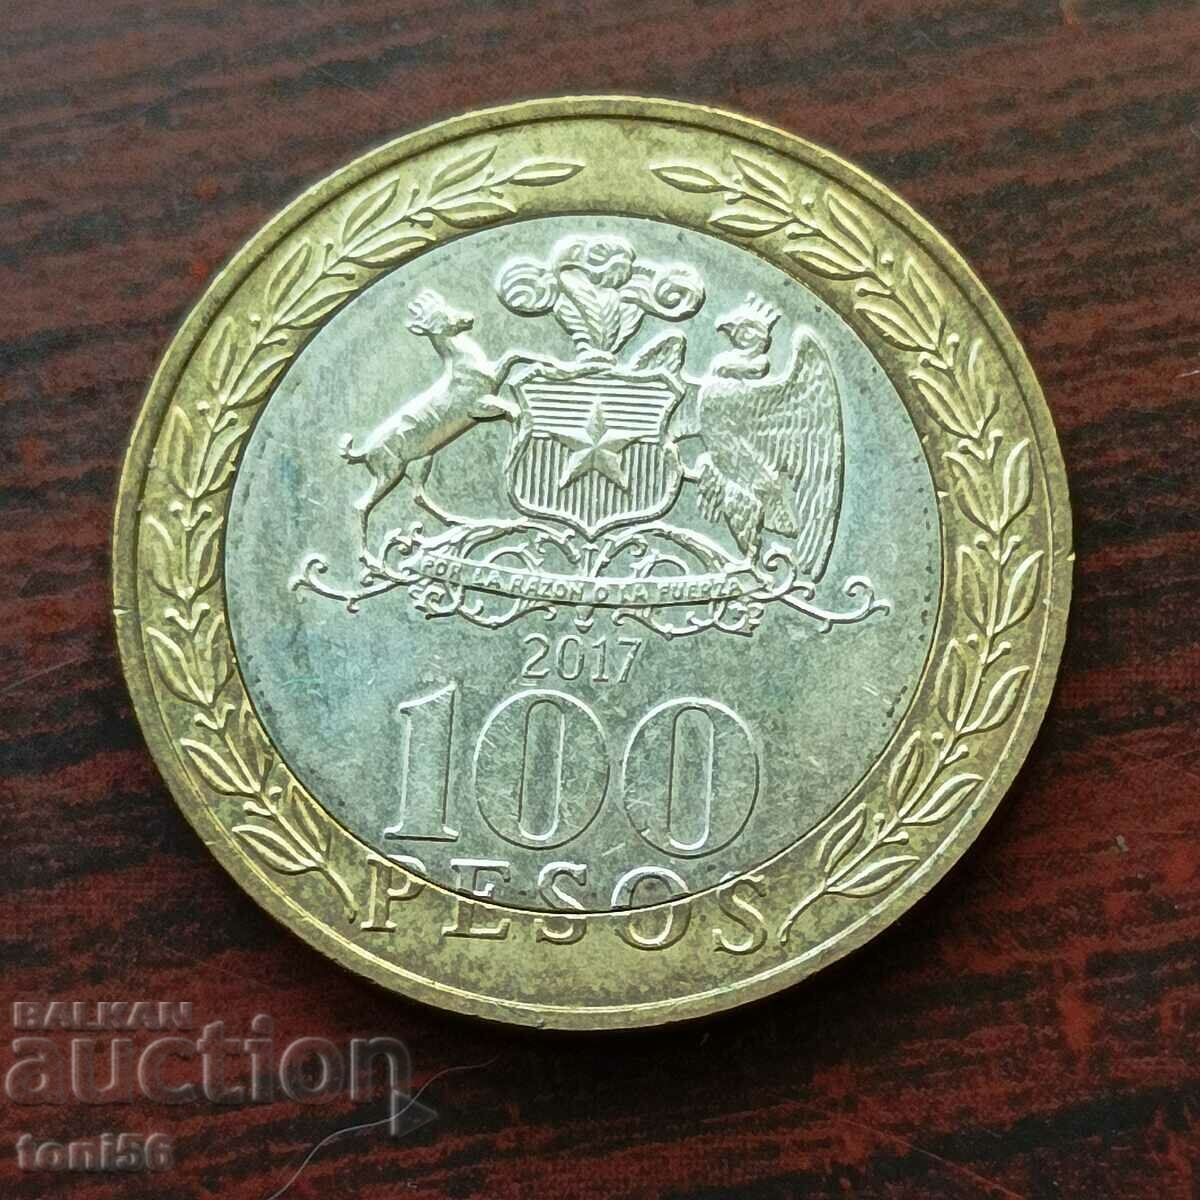 Chile 100 Pesos 2017 UNC